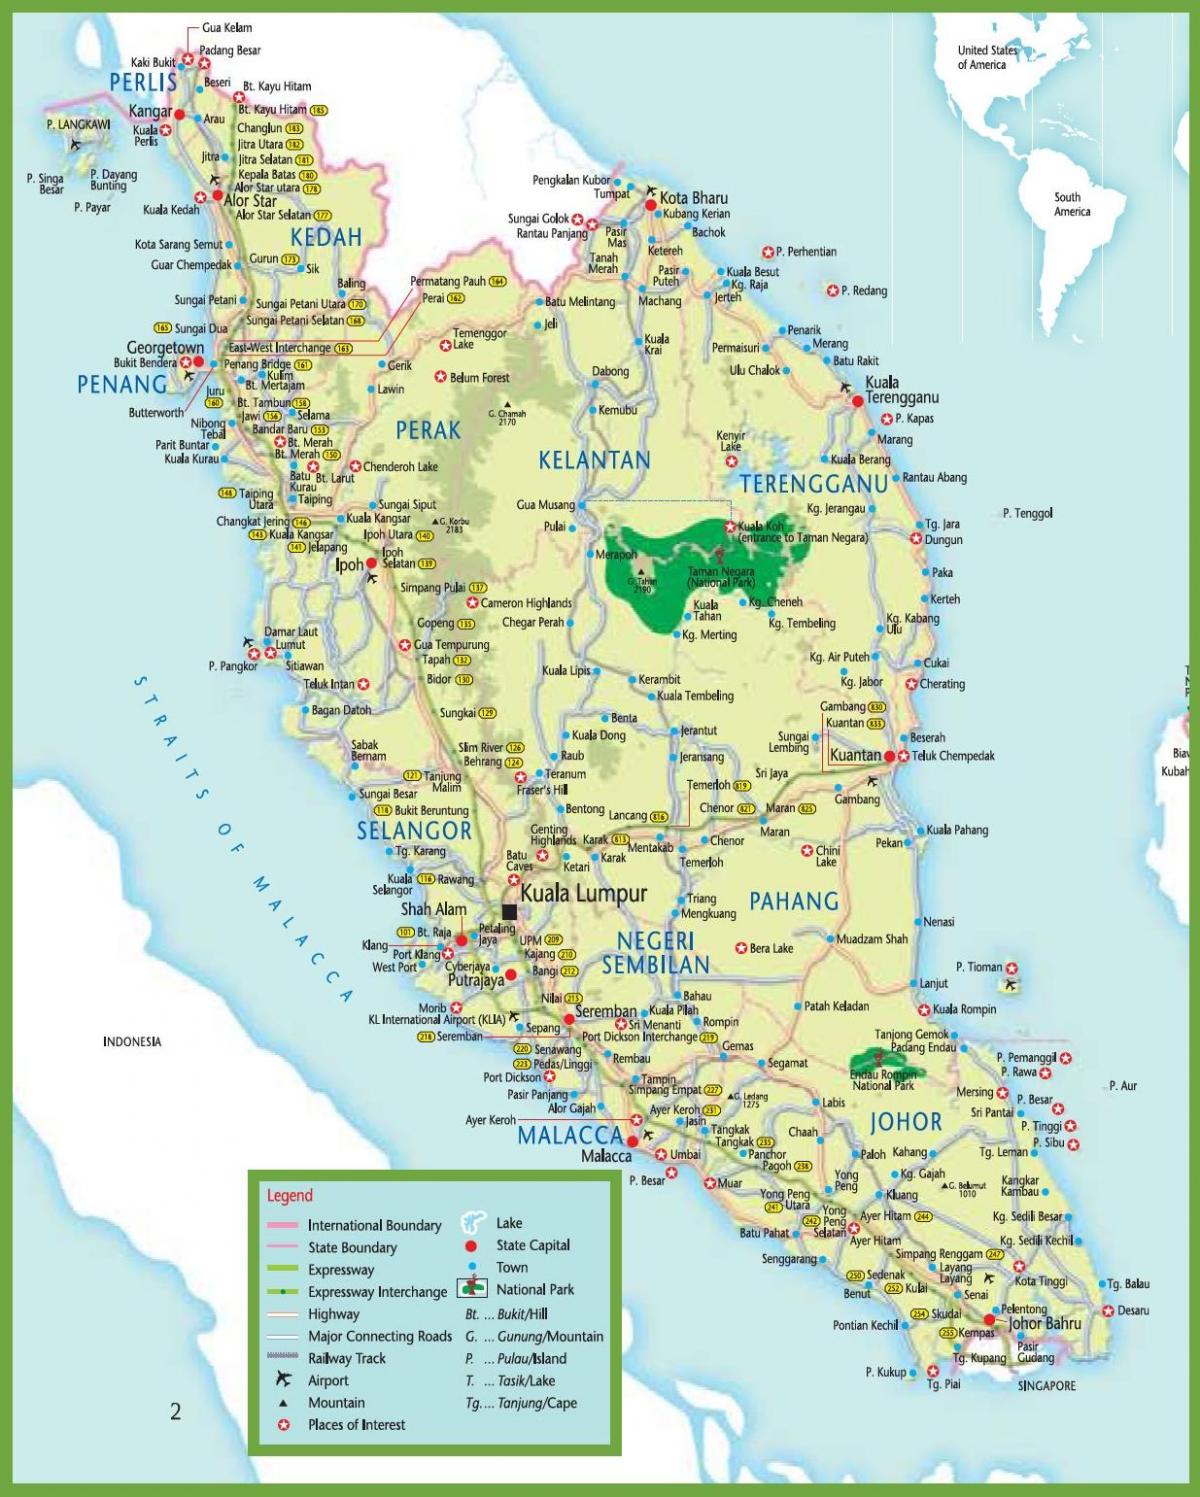 MRI քարտեզ Մալայզիայում